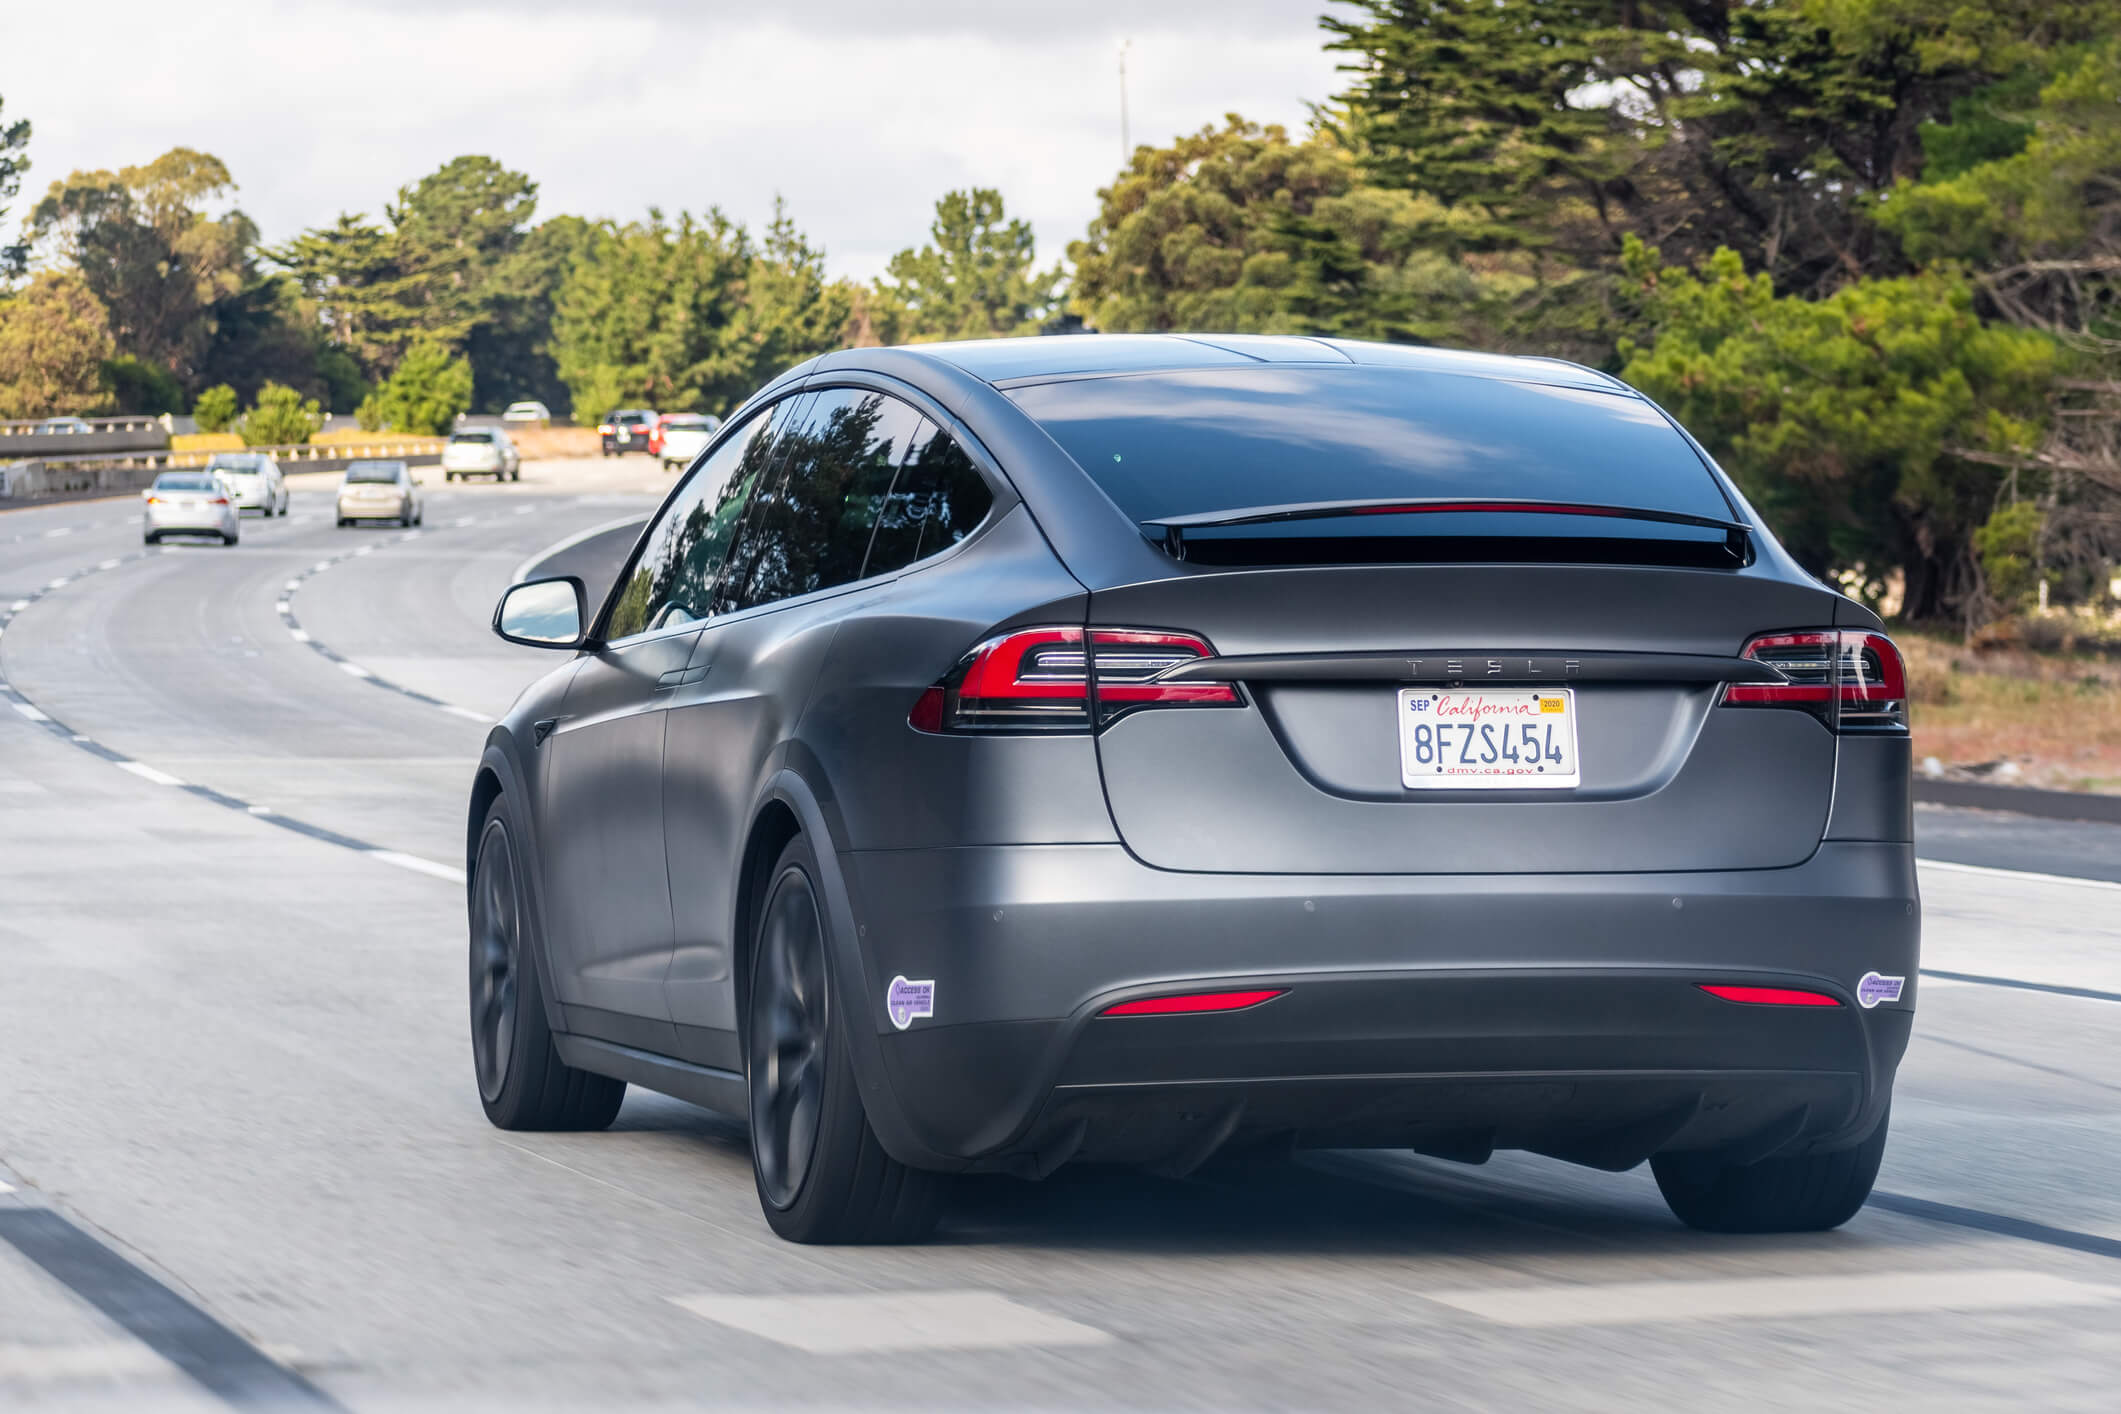 A Tesla Model X driving through Silicon Valley